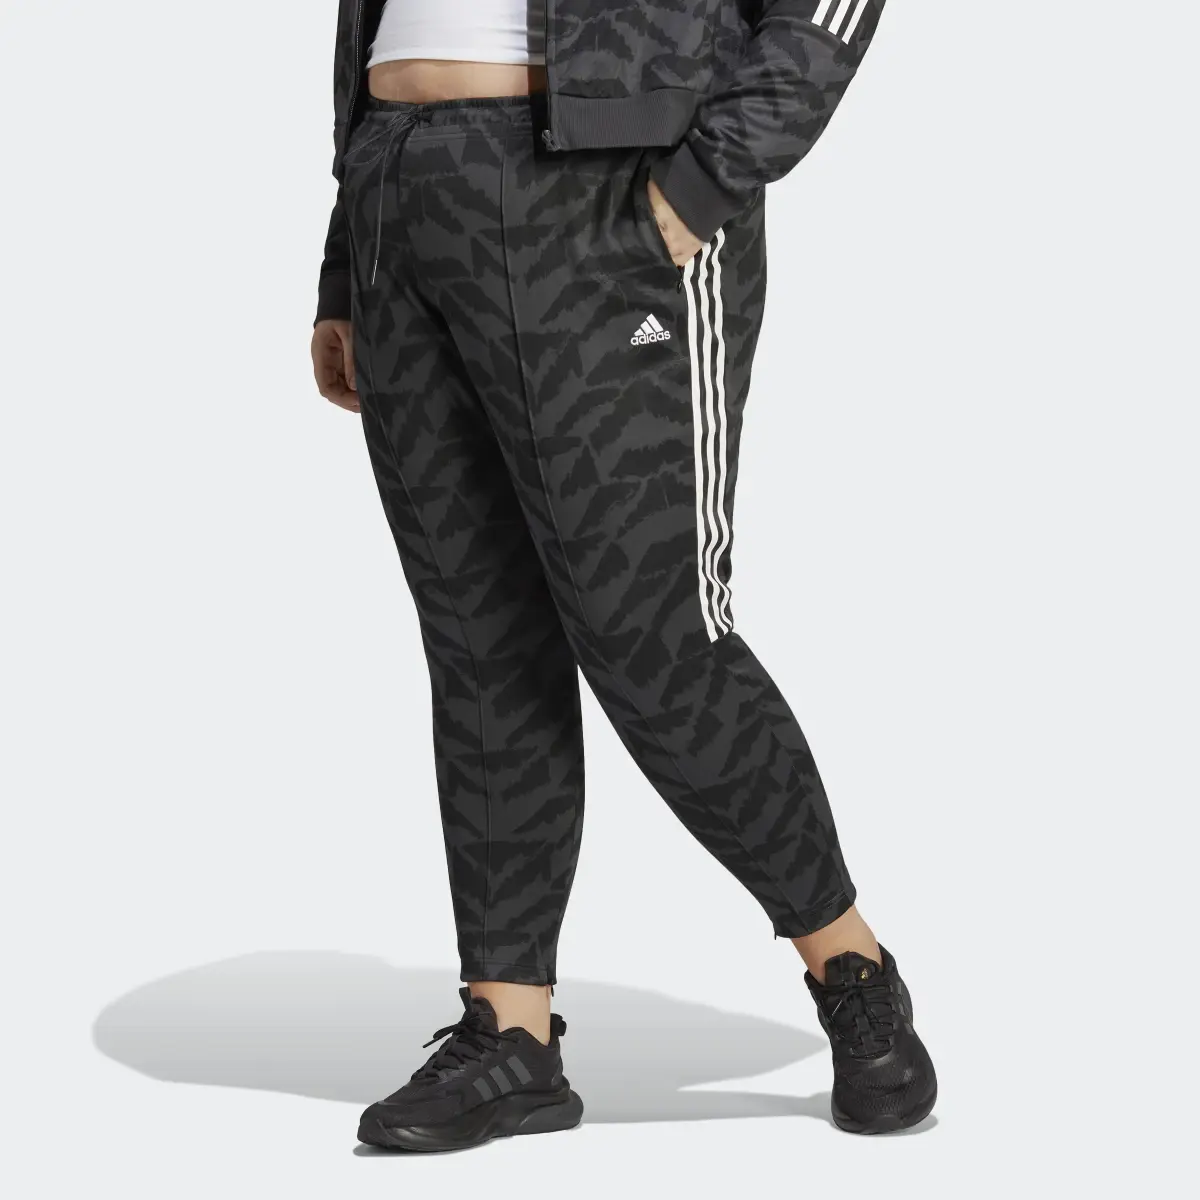 Adidas Tiro Suit Up Lifestyle Track Pant (Plus Size). 1